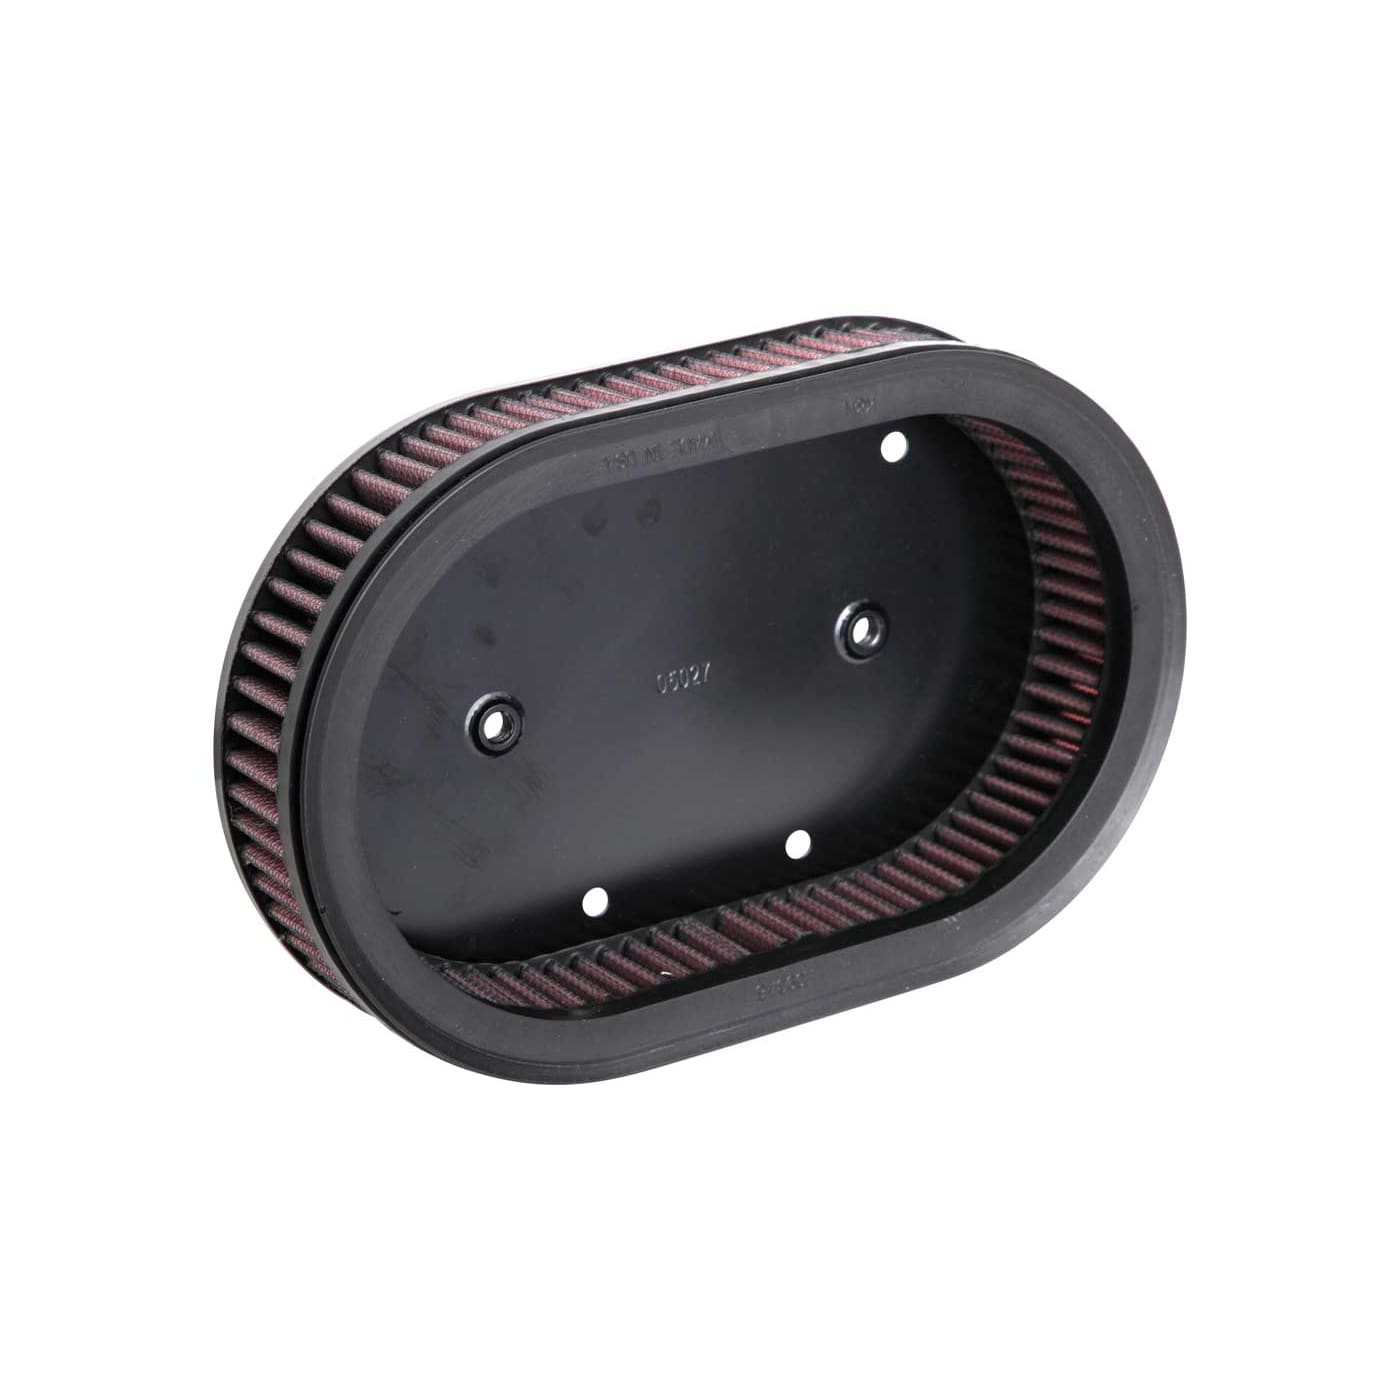 K&n filtros de aire deportivos filtro de aire filtro intercambio aire para Harley Davidson hd-0910 